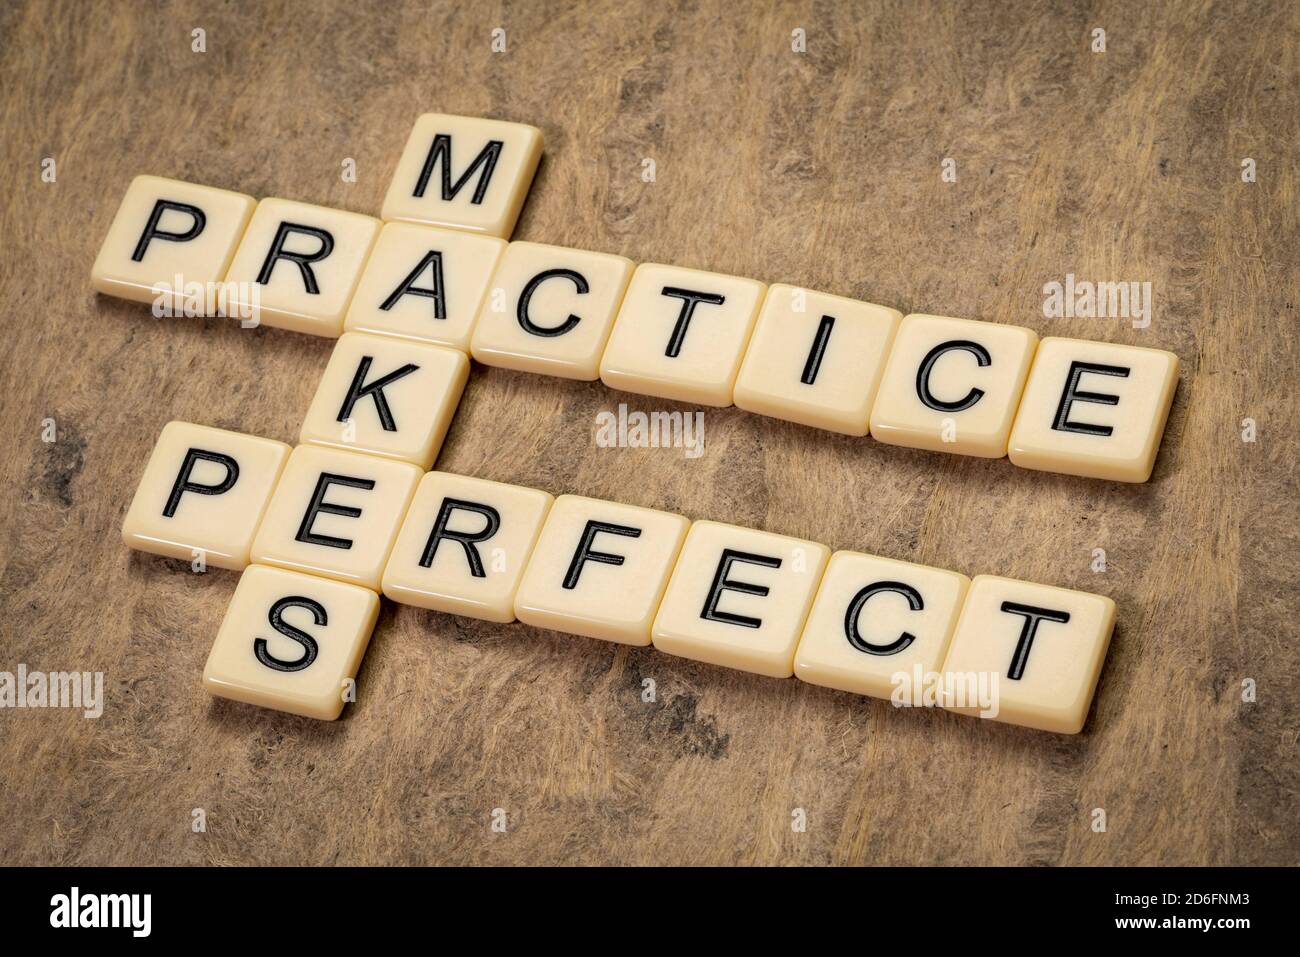 Praxis macht perfekte Kreuzworträtsel in Elfenbein Buchstaben gegen strukturierte Rinde Papier, Bildung und Ausbildung Konzept Stockfoto